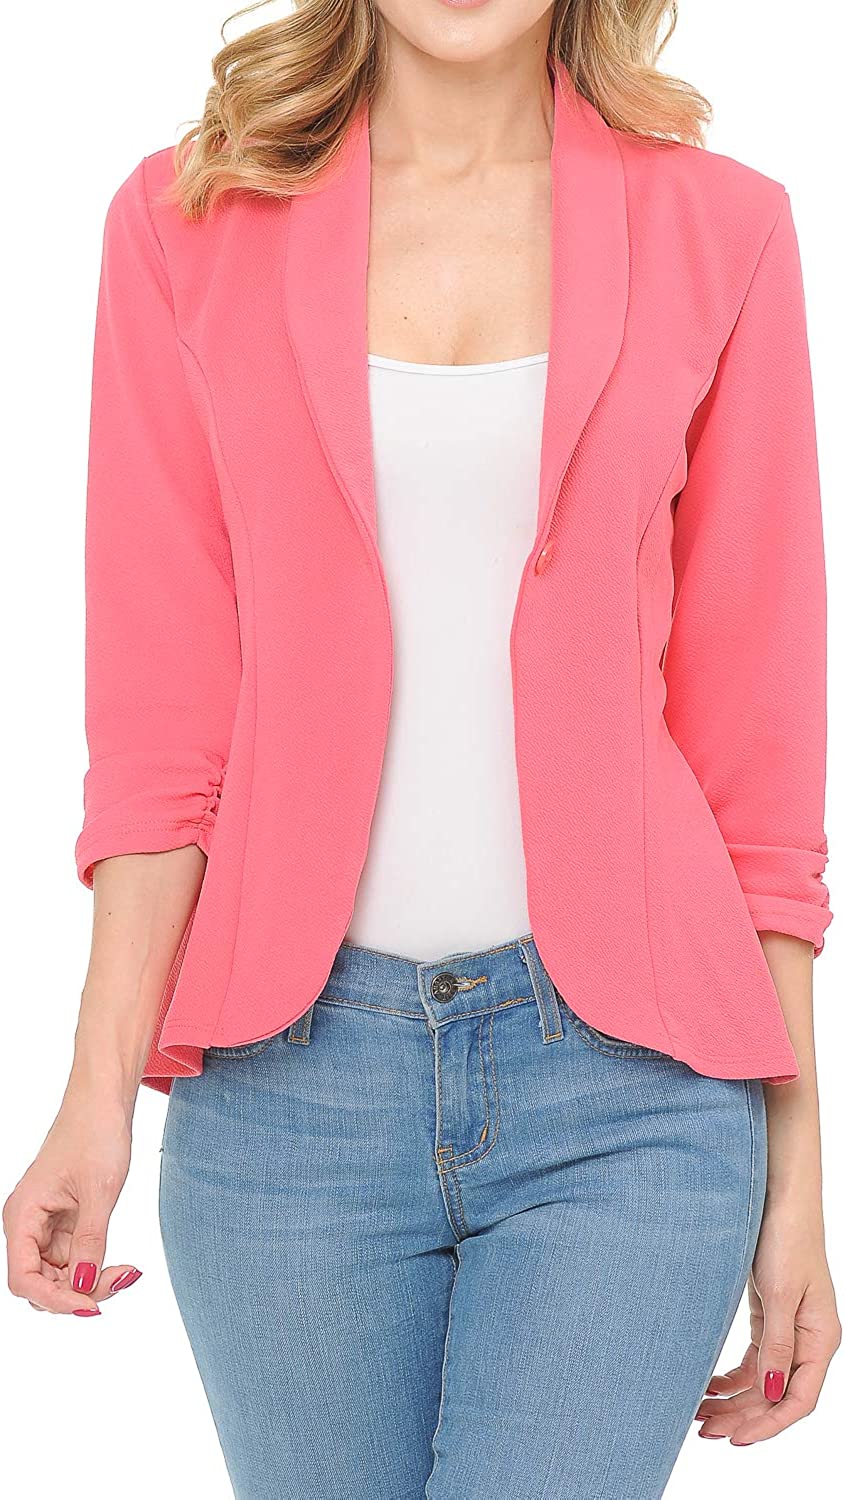 MINEFREE Women's 3/4 Ruched Sleeve Lightweight Work Office Blazer Jacket  (S-3XL) | eBay